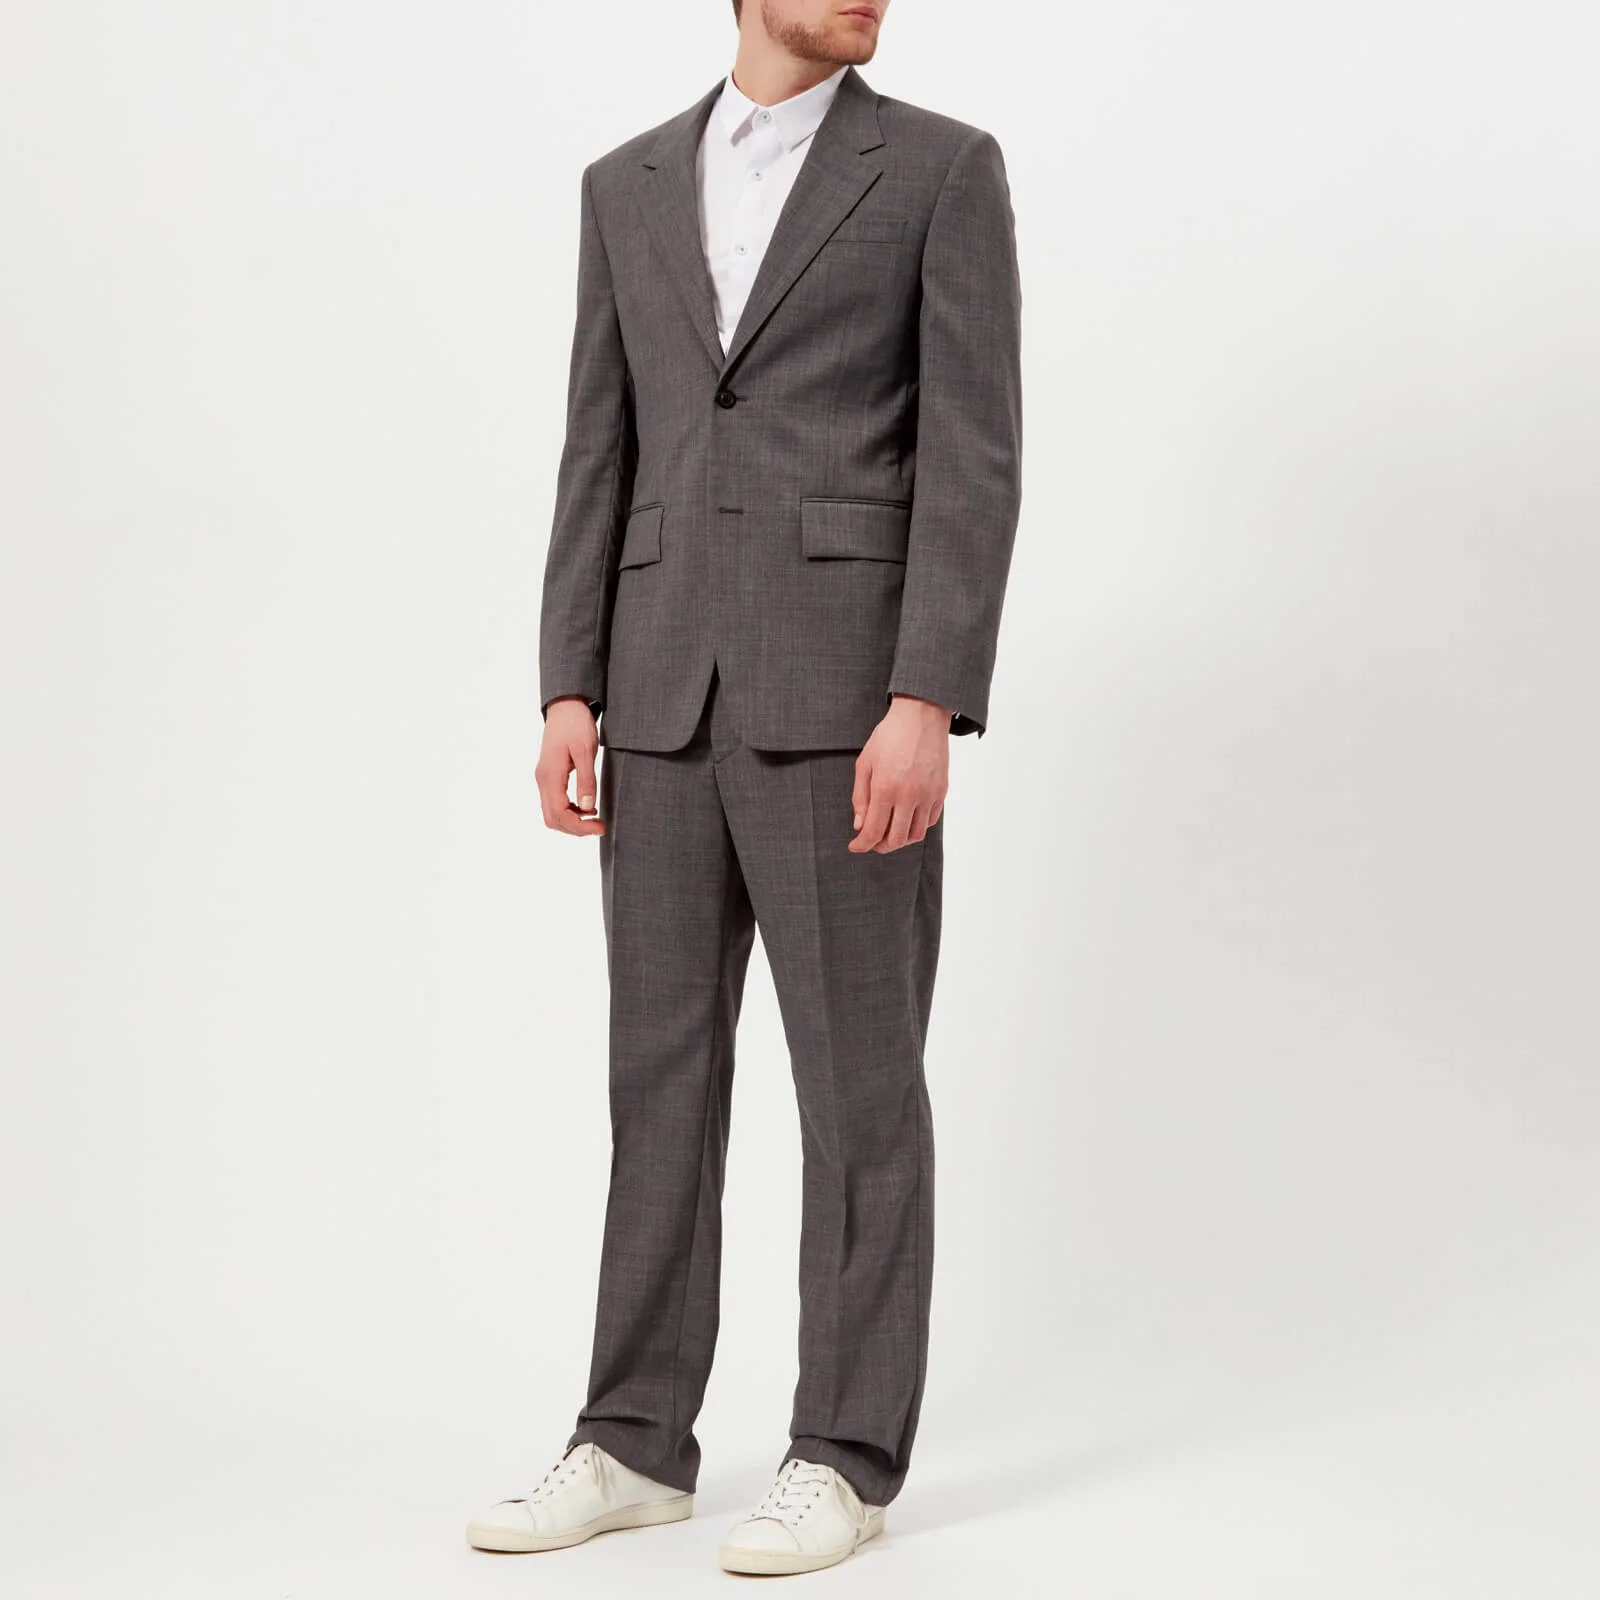 Maison Margiela Men's Single Breasted Suit - Light Grey Image 1